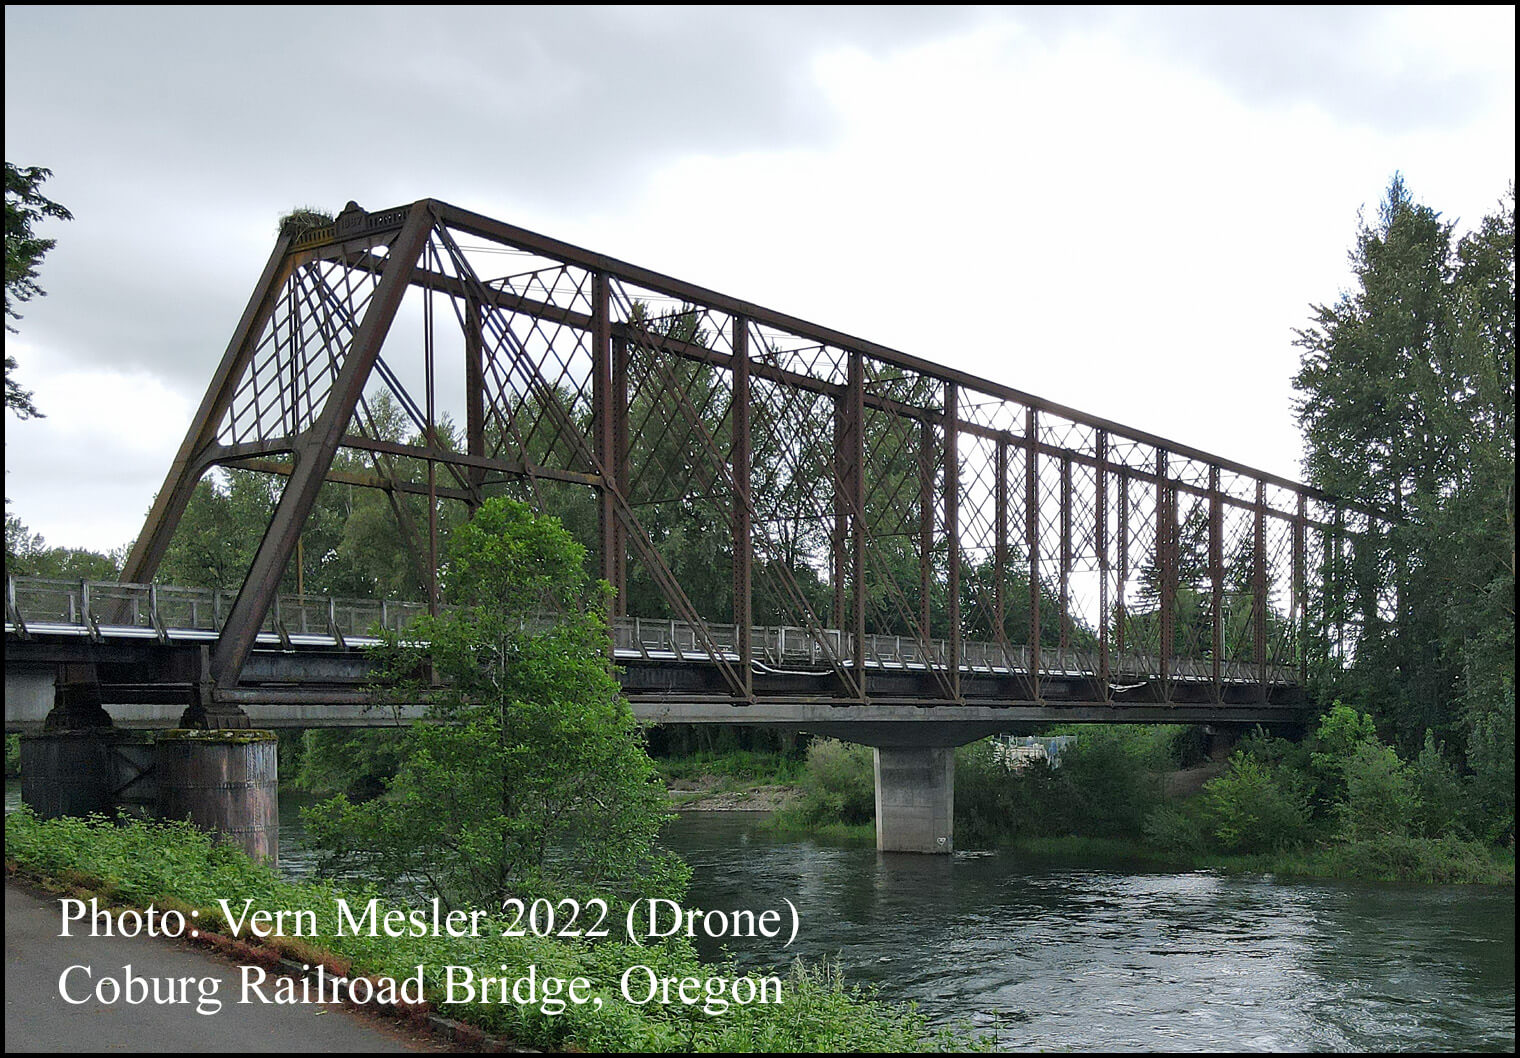 Coburg Railroad Bridge